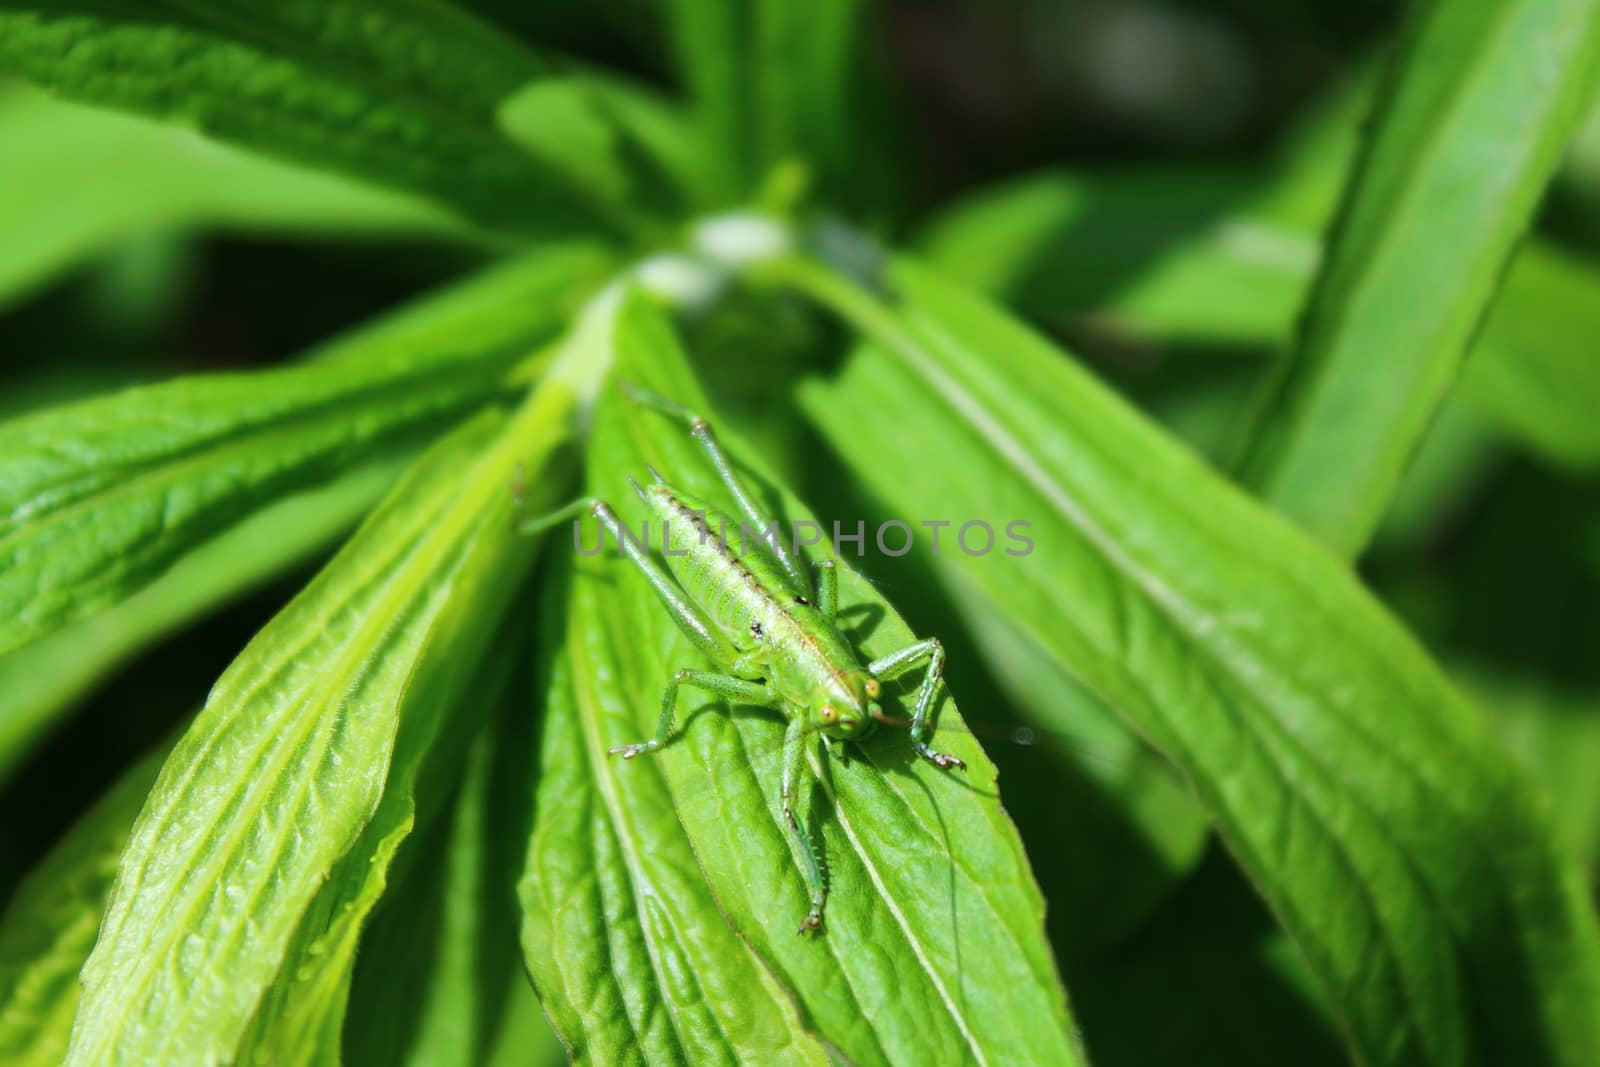 grasshopper on a leaf in the garden by martina_unbehauen